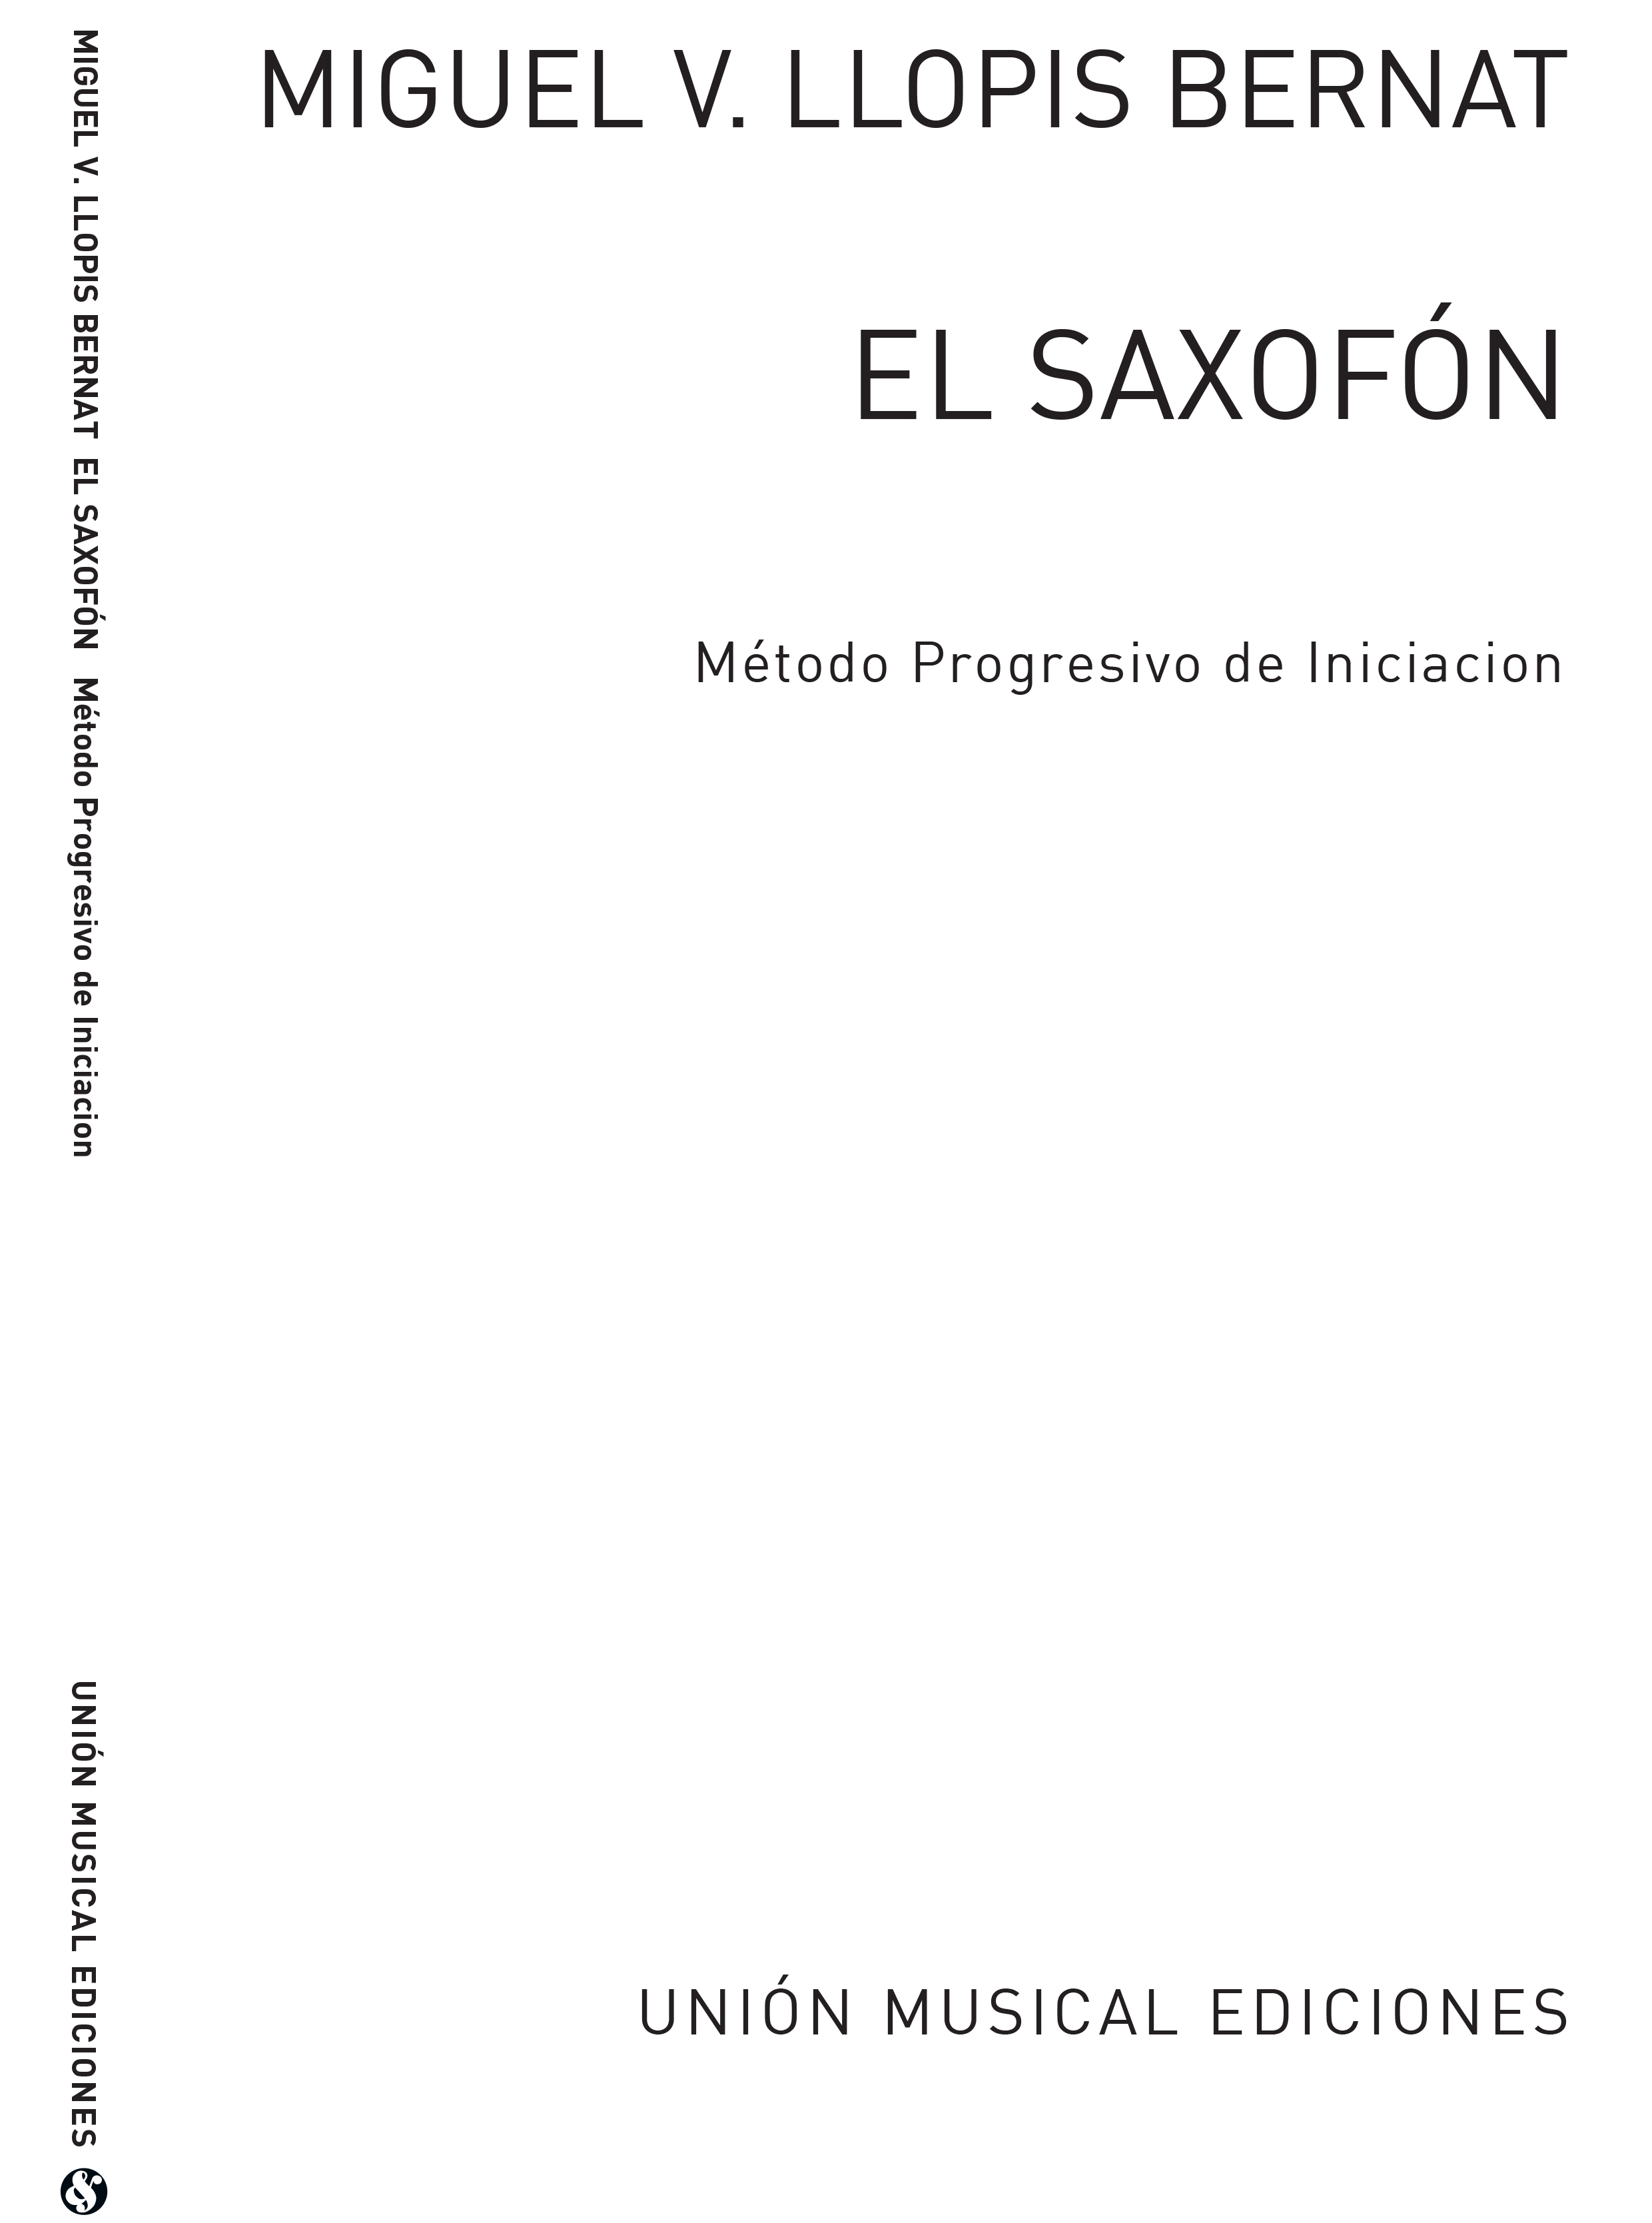 Miguel V. Llopis Bernat: El Saxofon (Metodo Progresivo De Iniciacion):